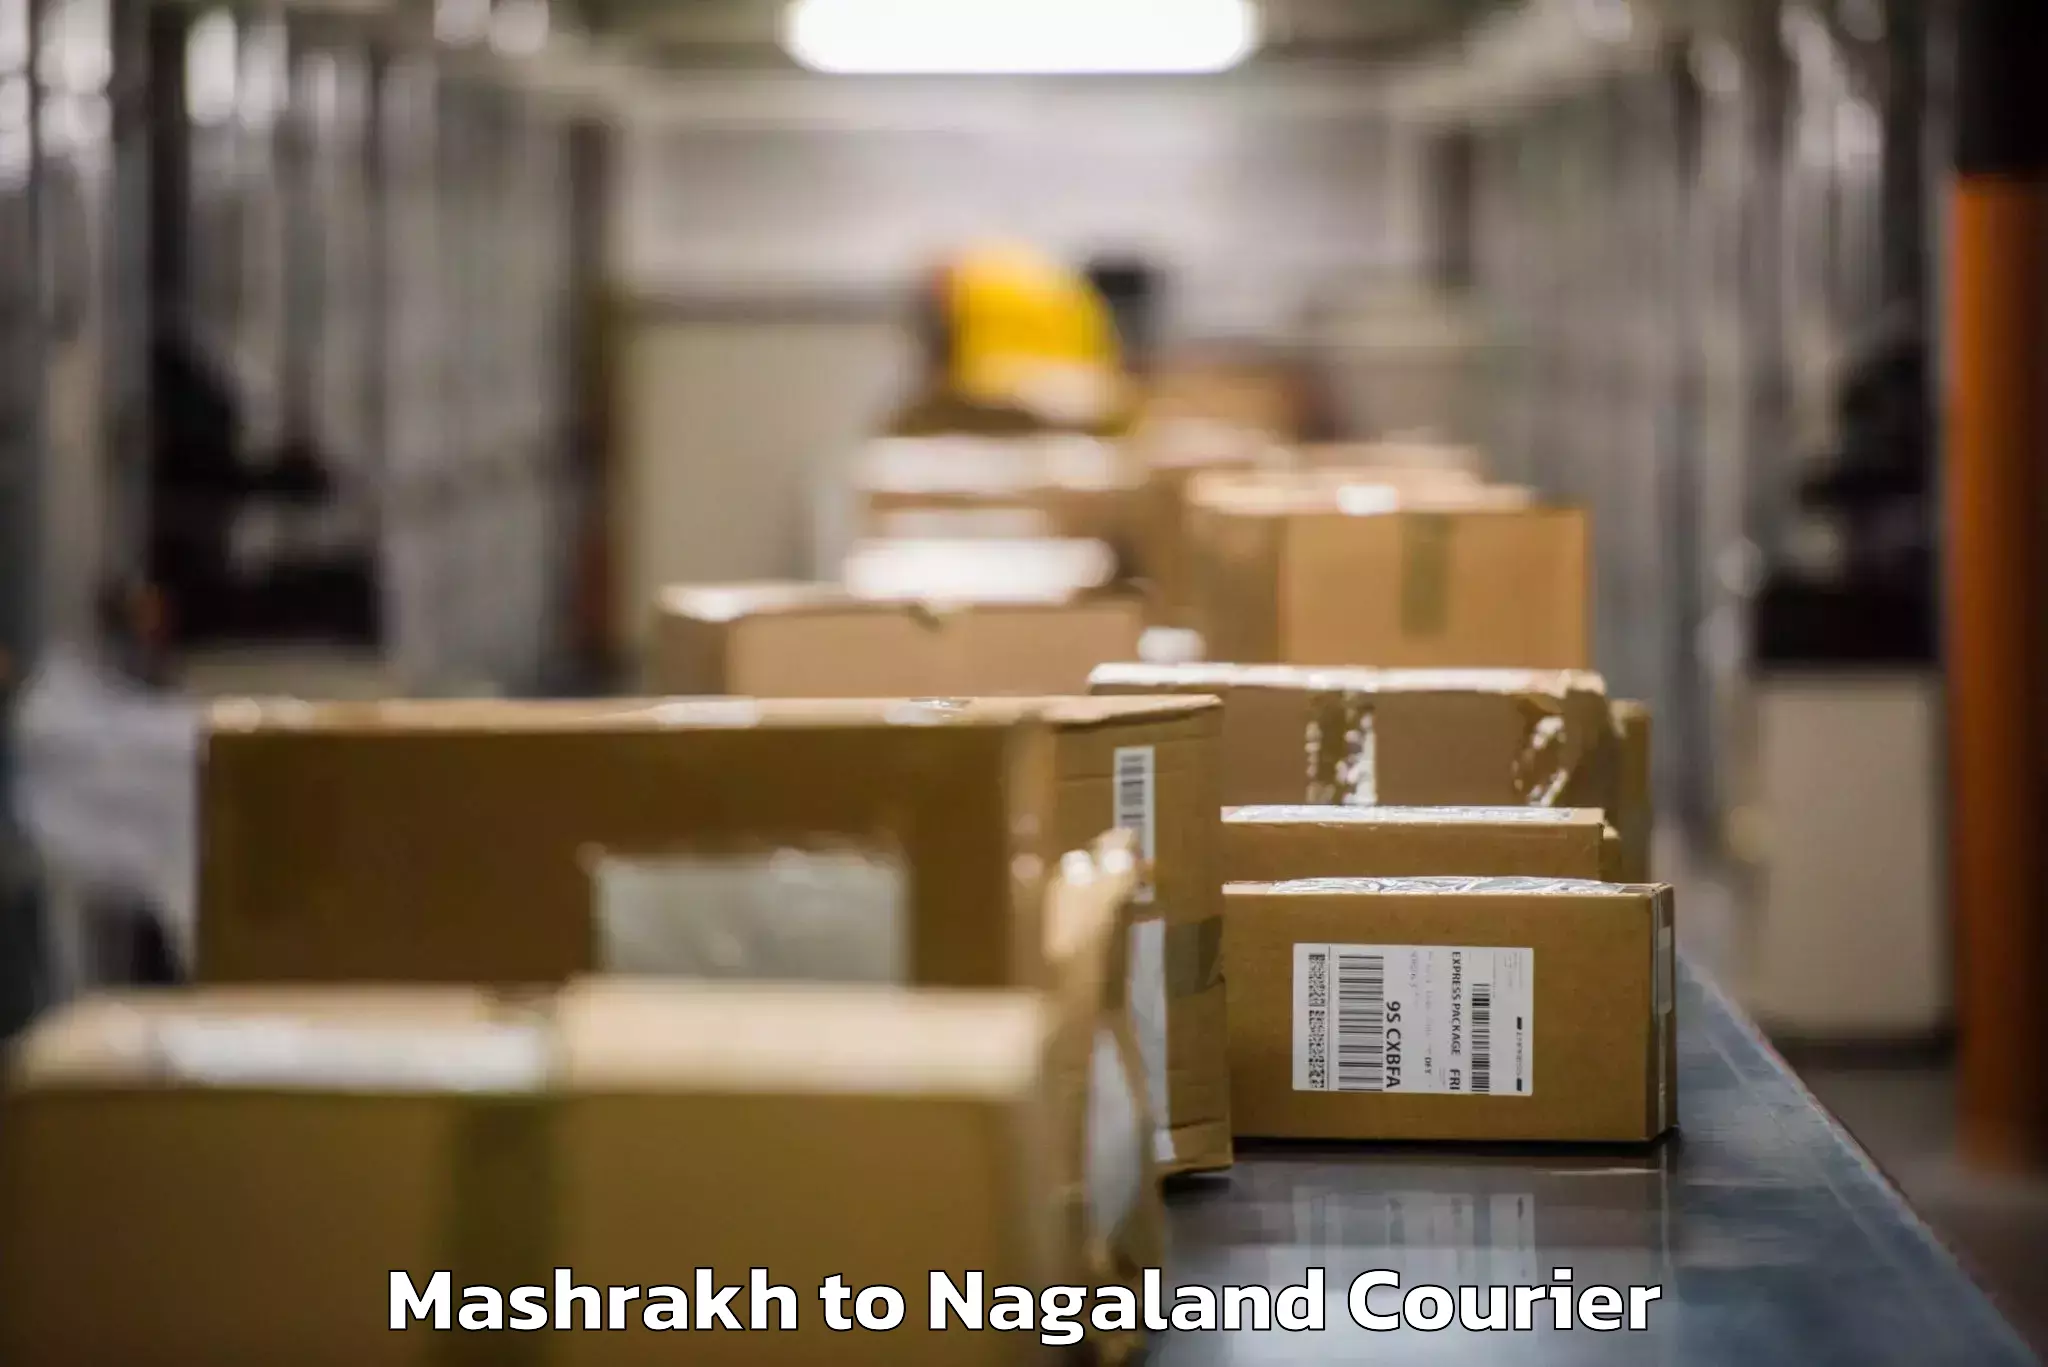 Luggage shipment specialists Mashrakh to Kiphire